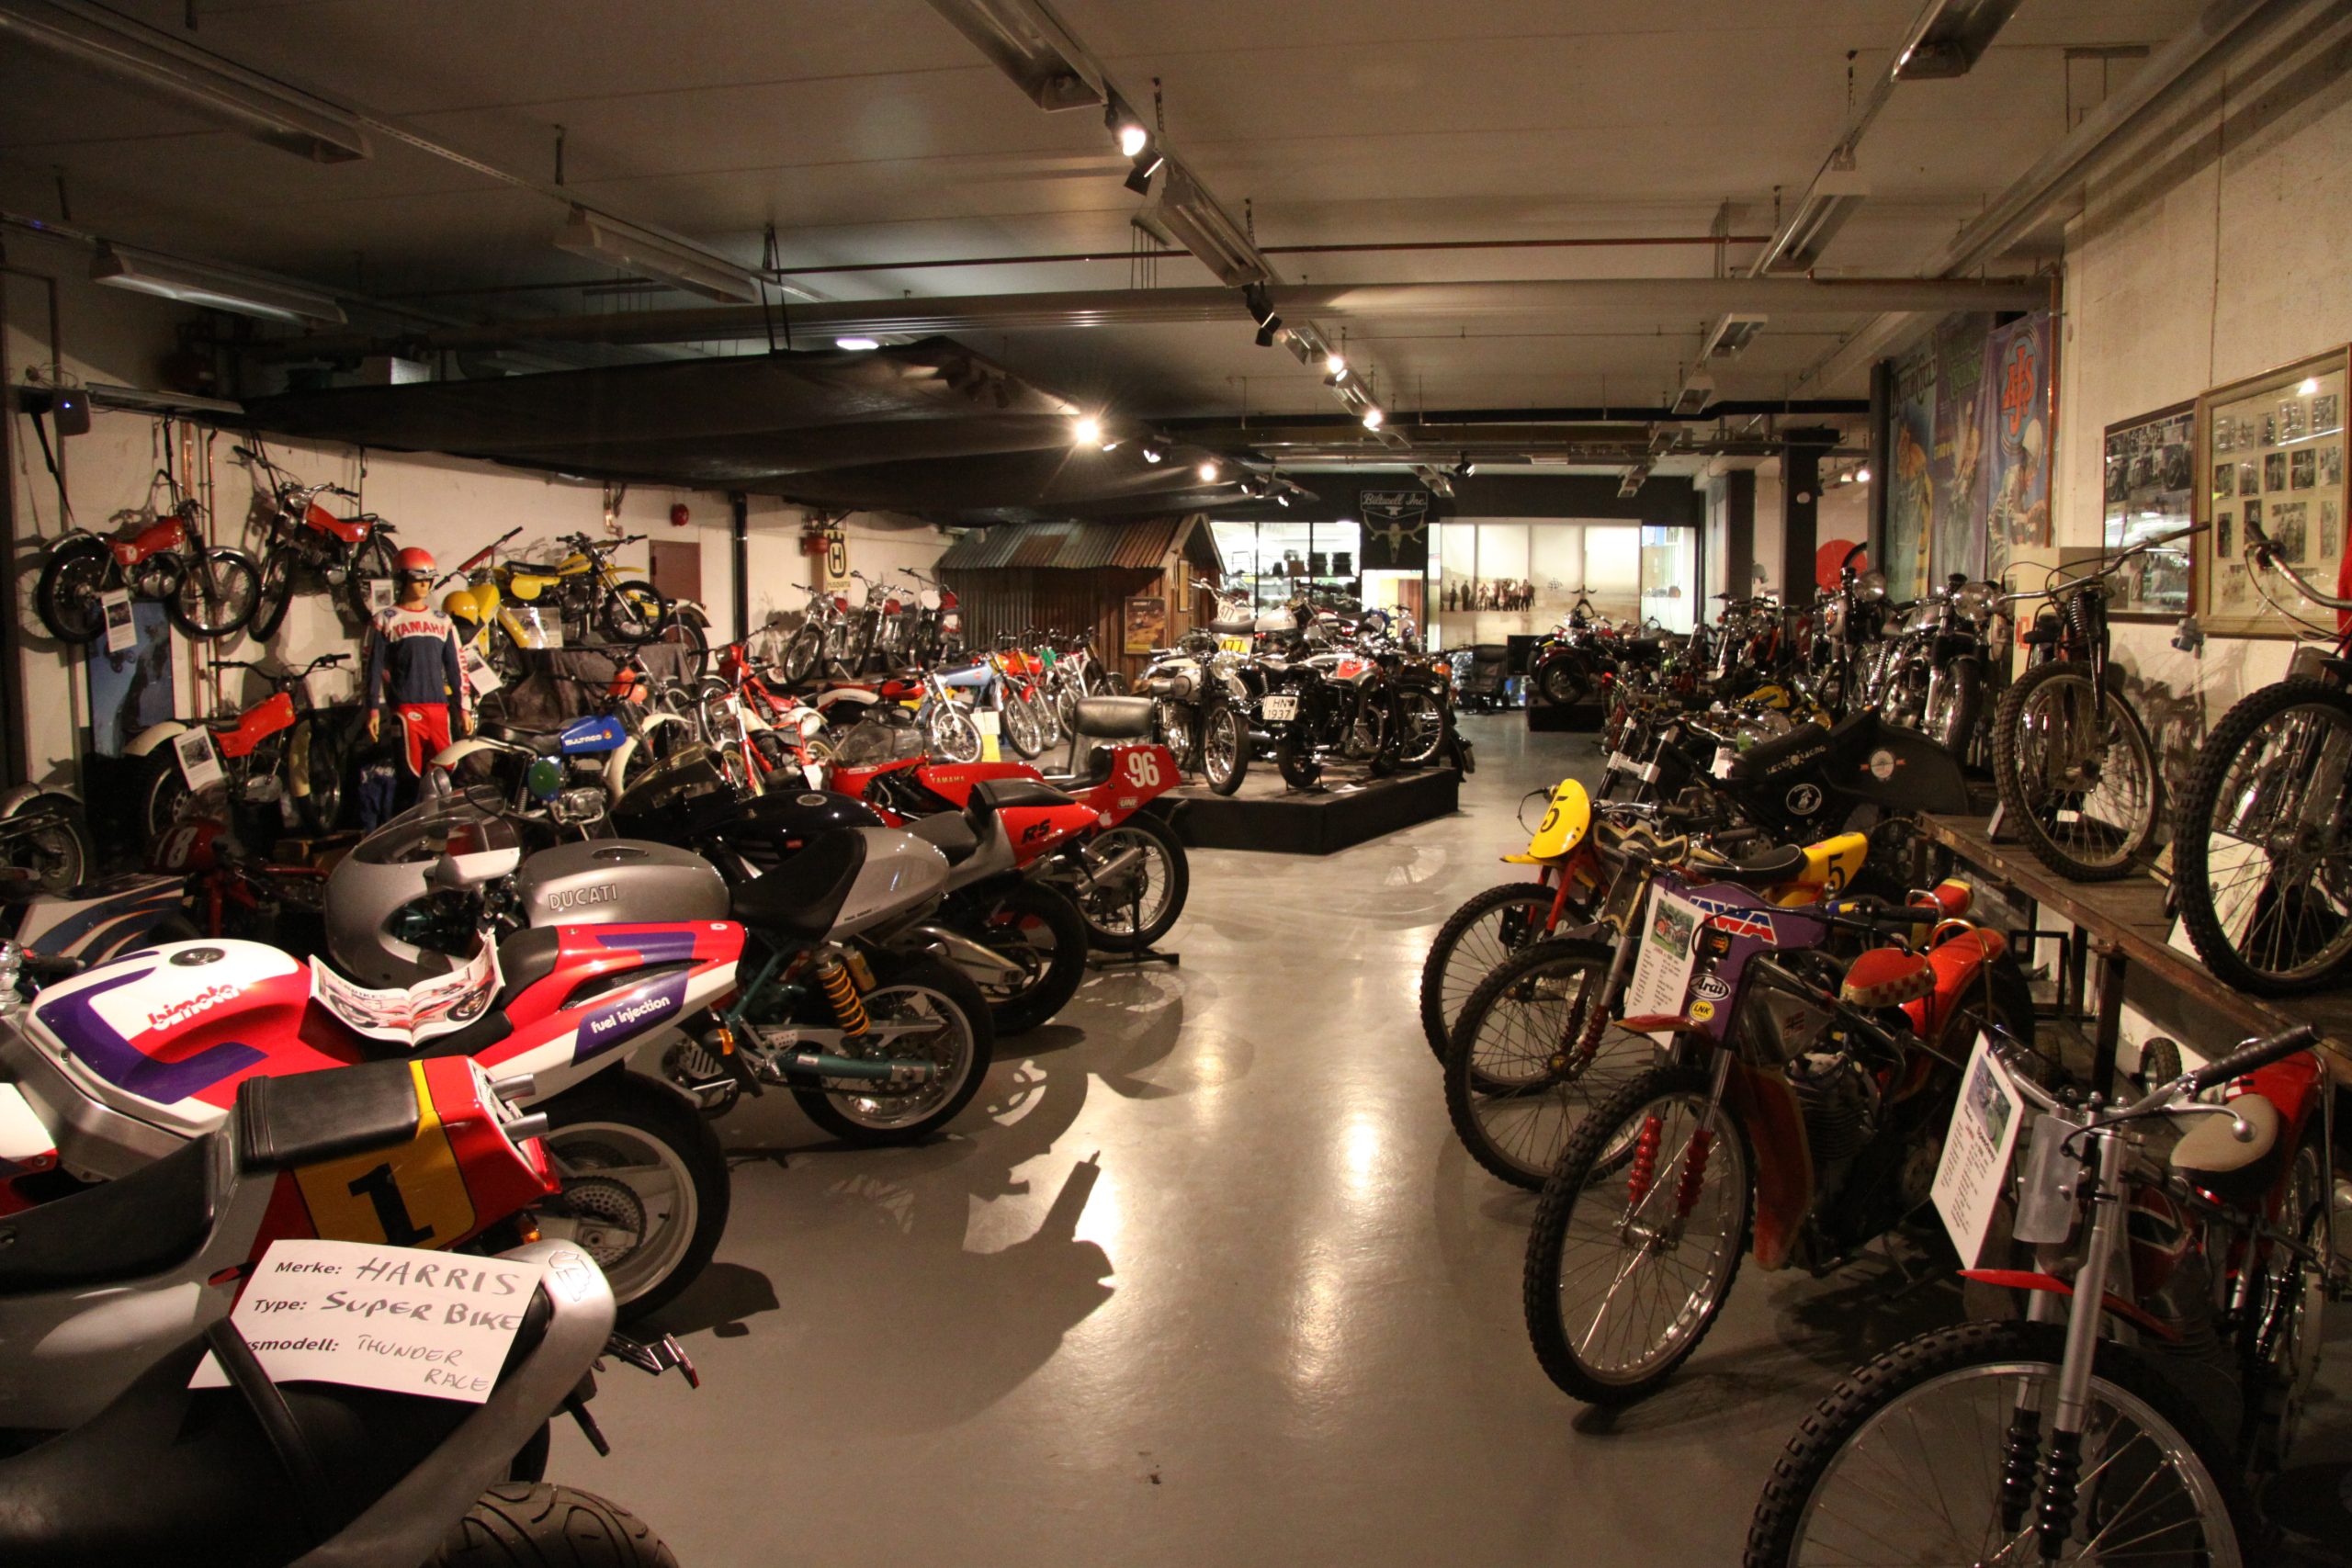 Skandinavisk Motorsykkel Center